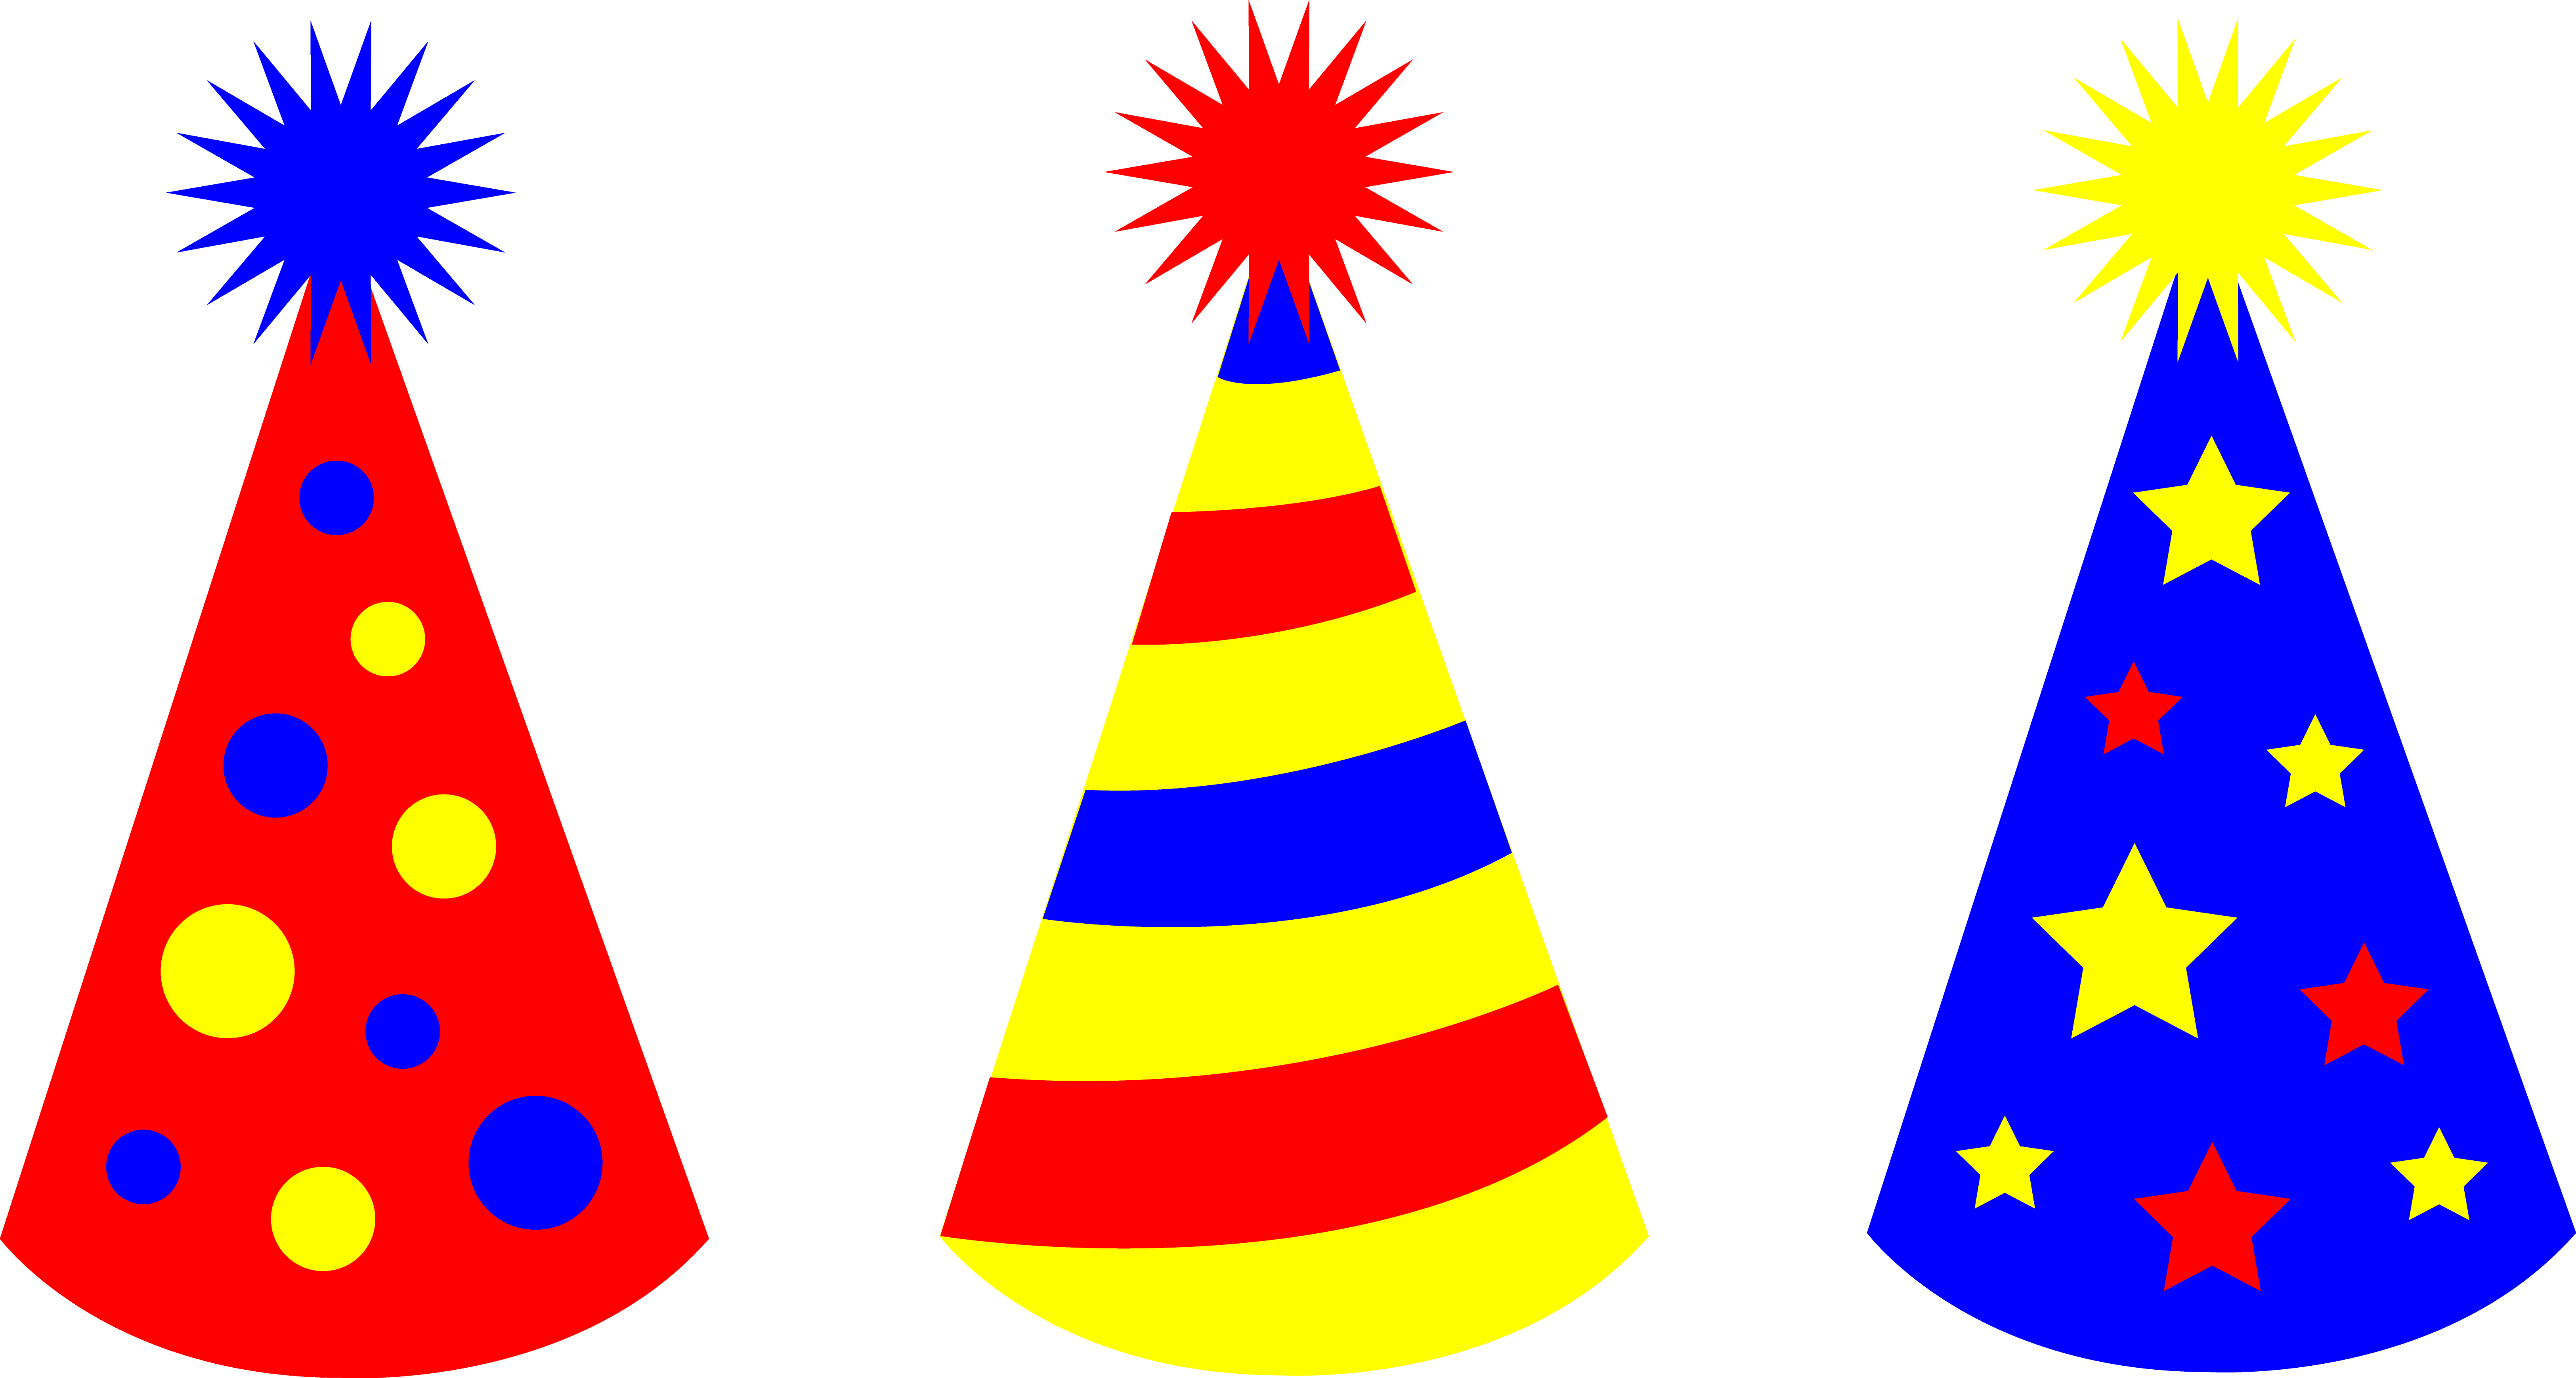 Imprezowa czapka urodzinowa